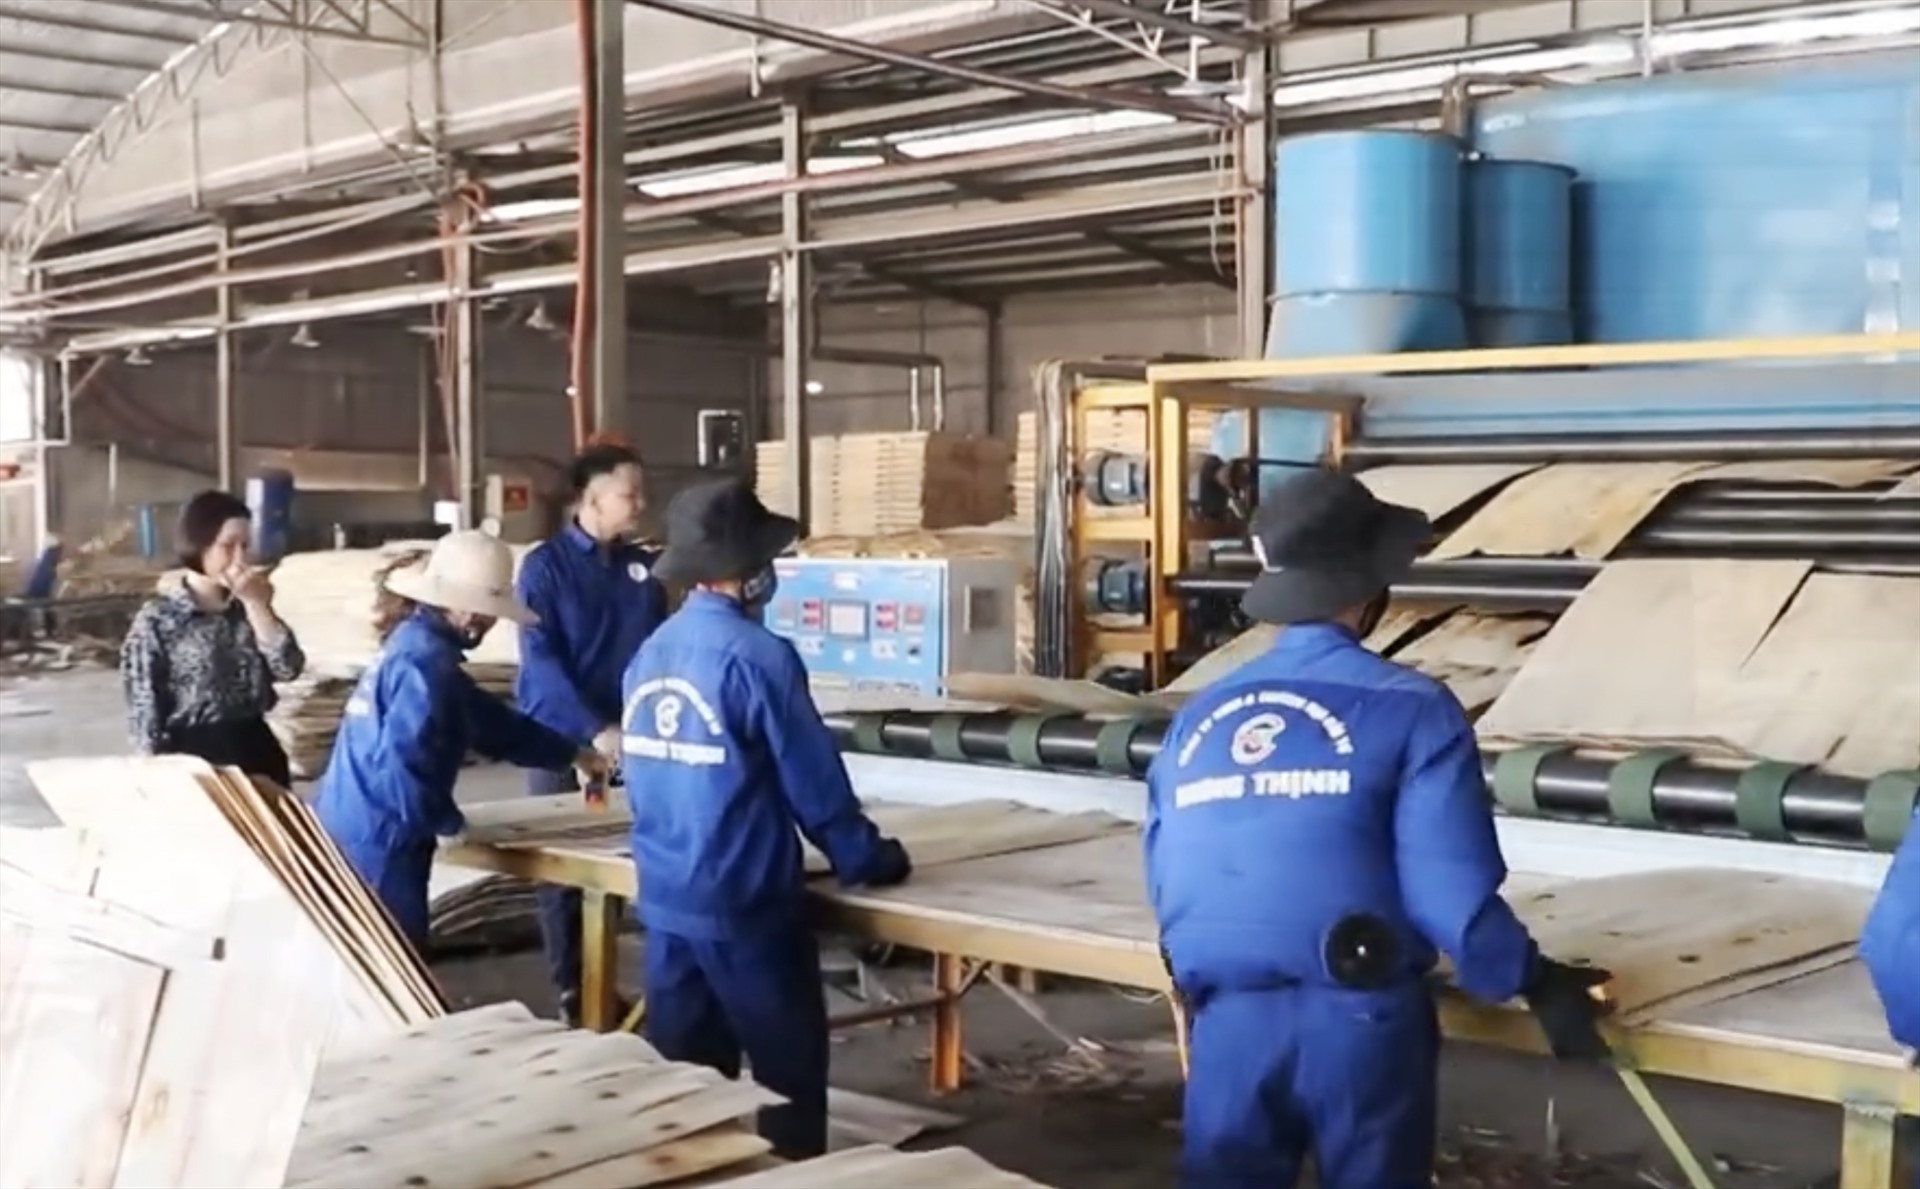 Xưởng gỗ của Công ty Hưng Thịnh với hơn 100 công nhân làm việc thường xuyên cùng số lượng máy móc lớn. Ảnh: Cổng thông tin Thái Nguyên.